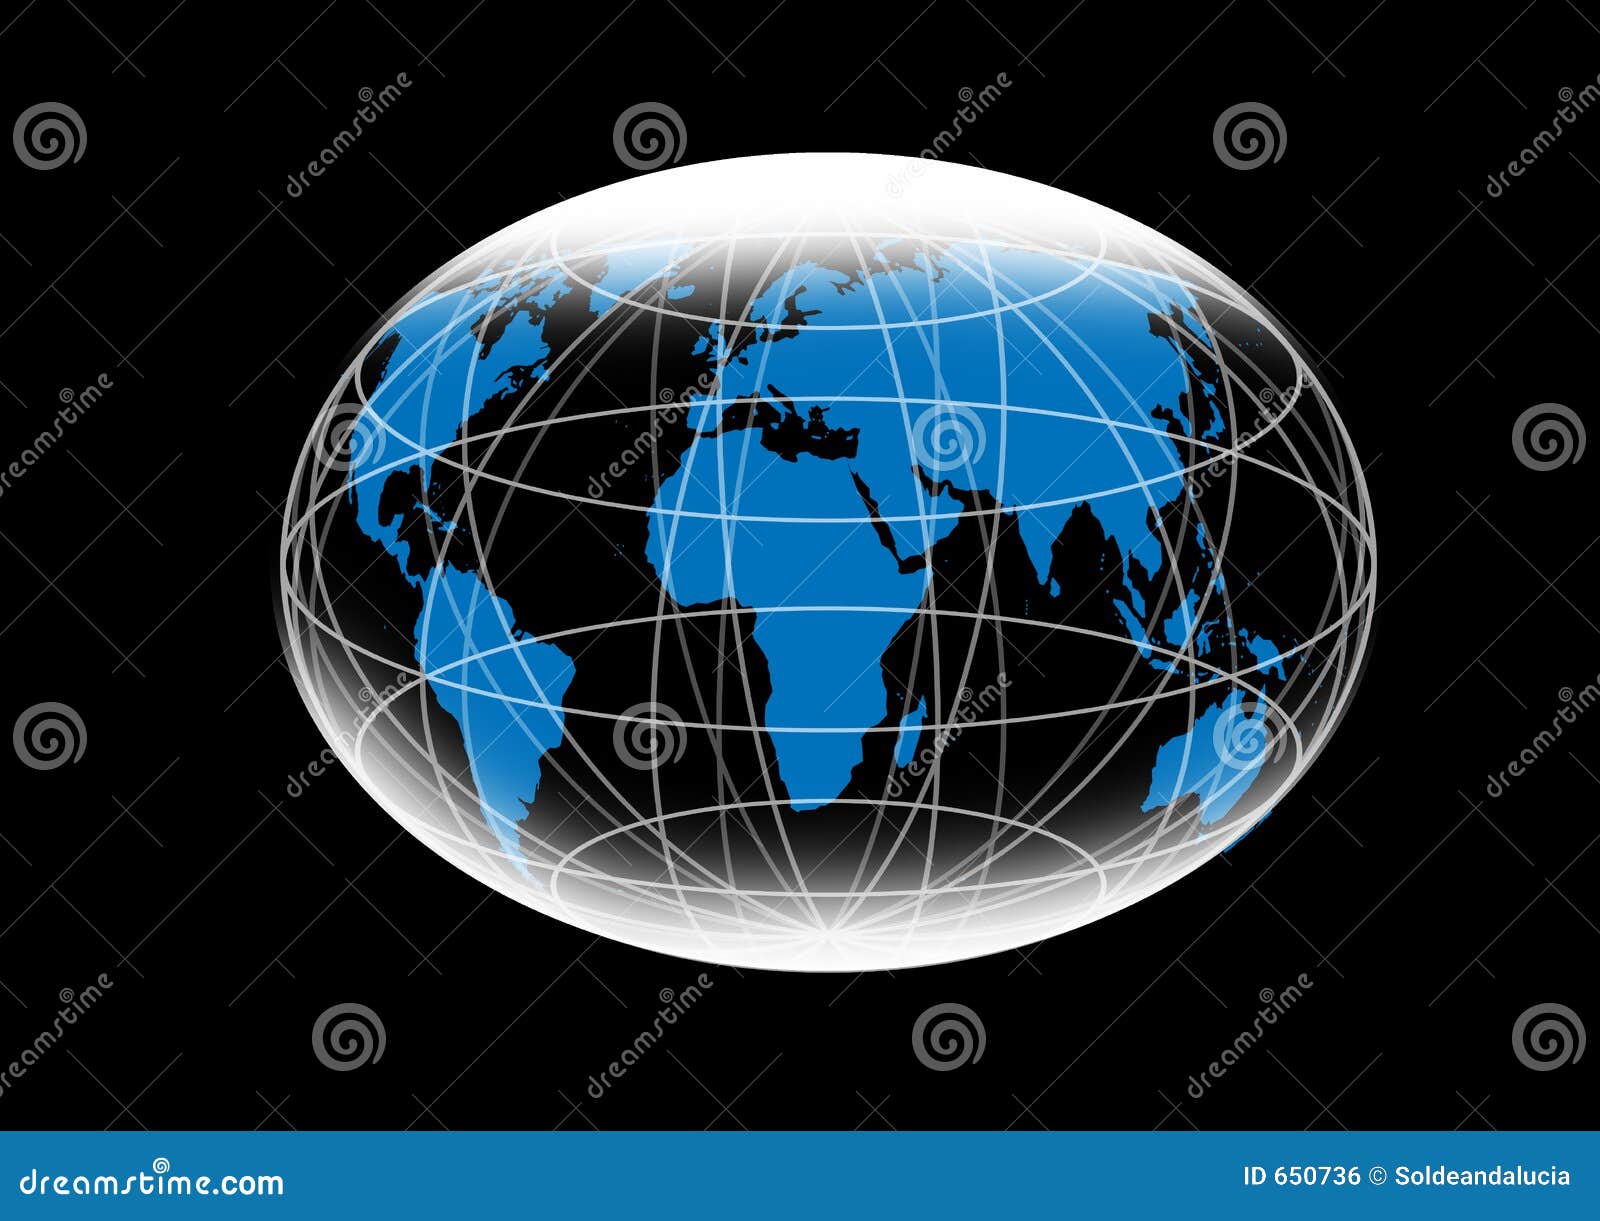 De kaart van de wereld. De kaartillustratie van de wereld